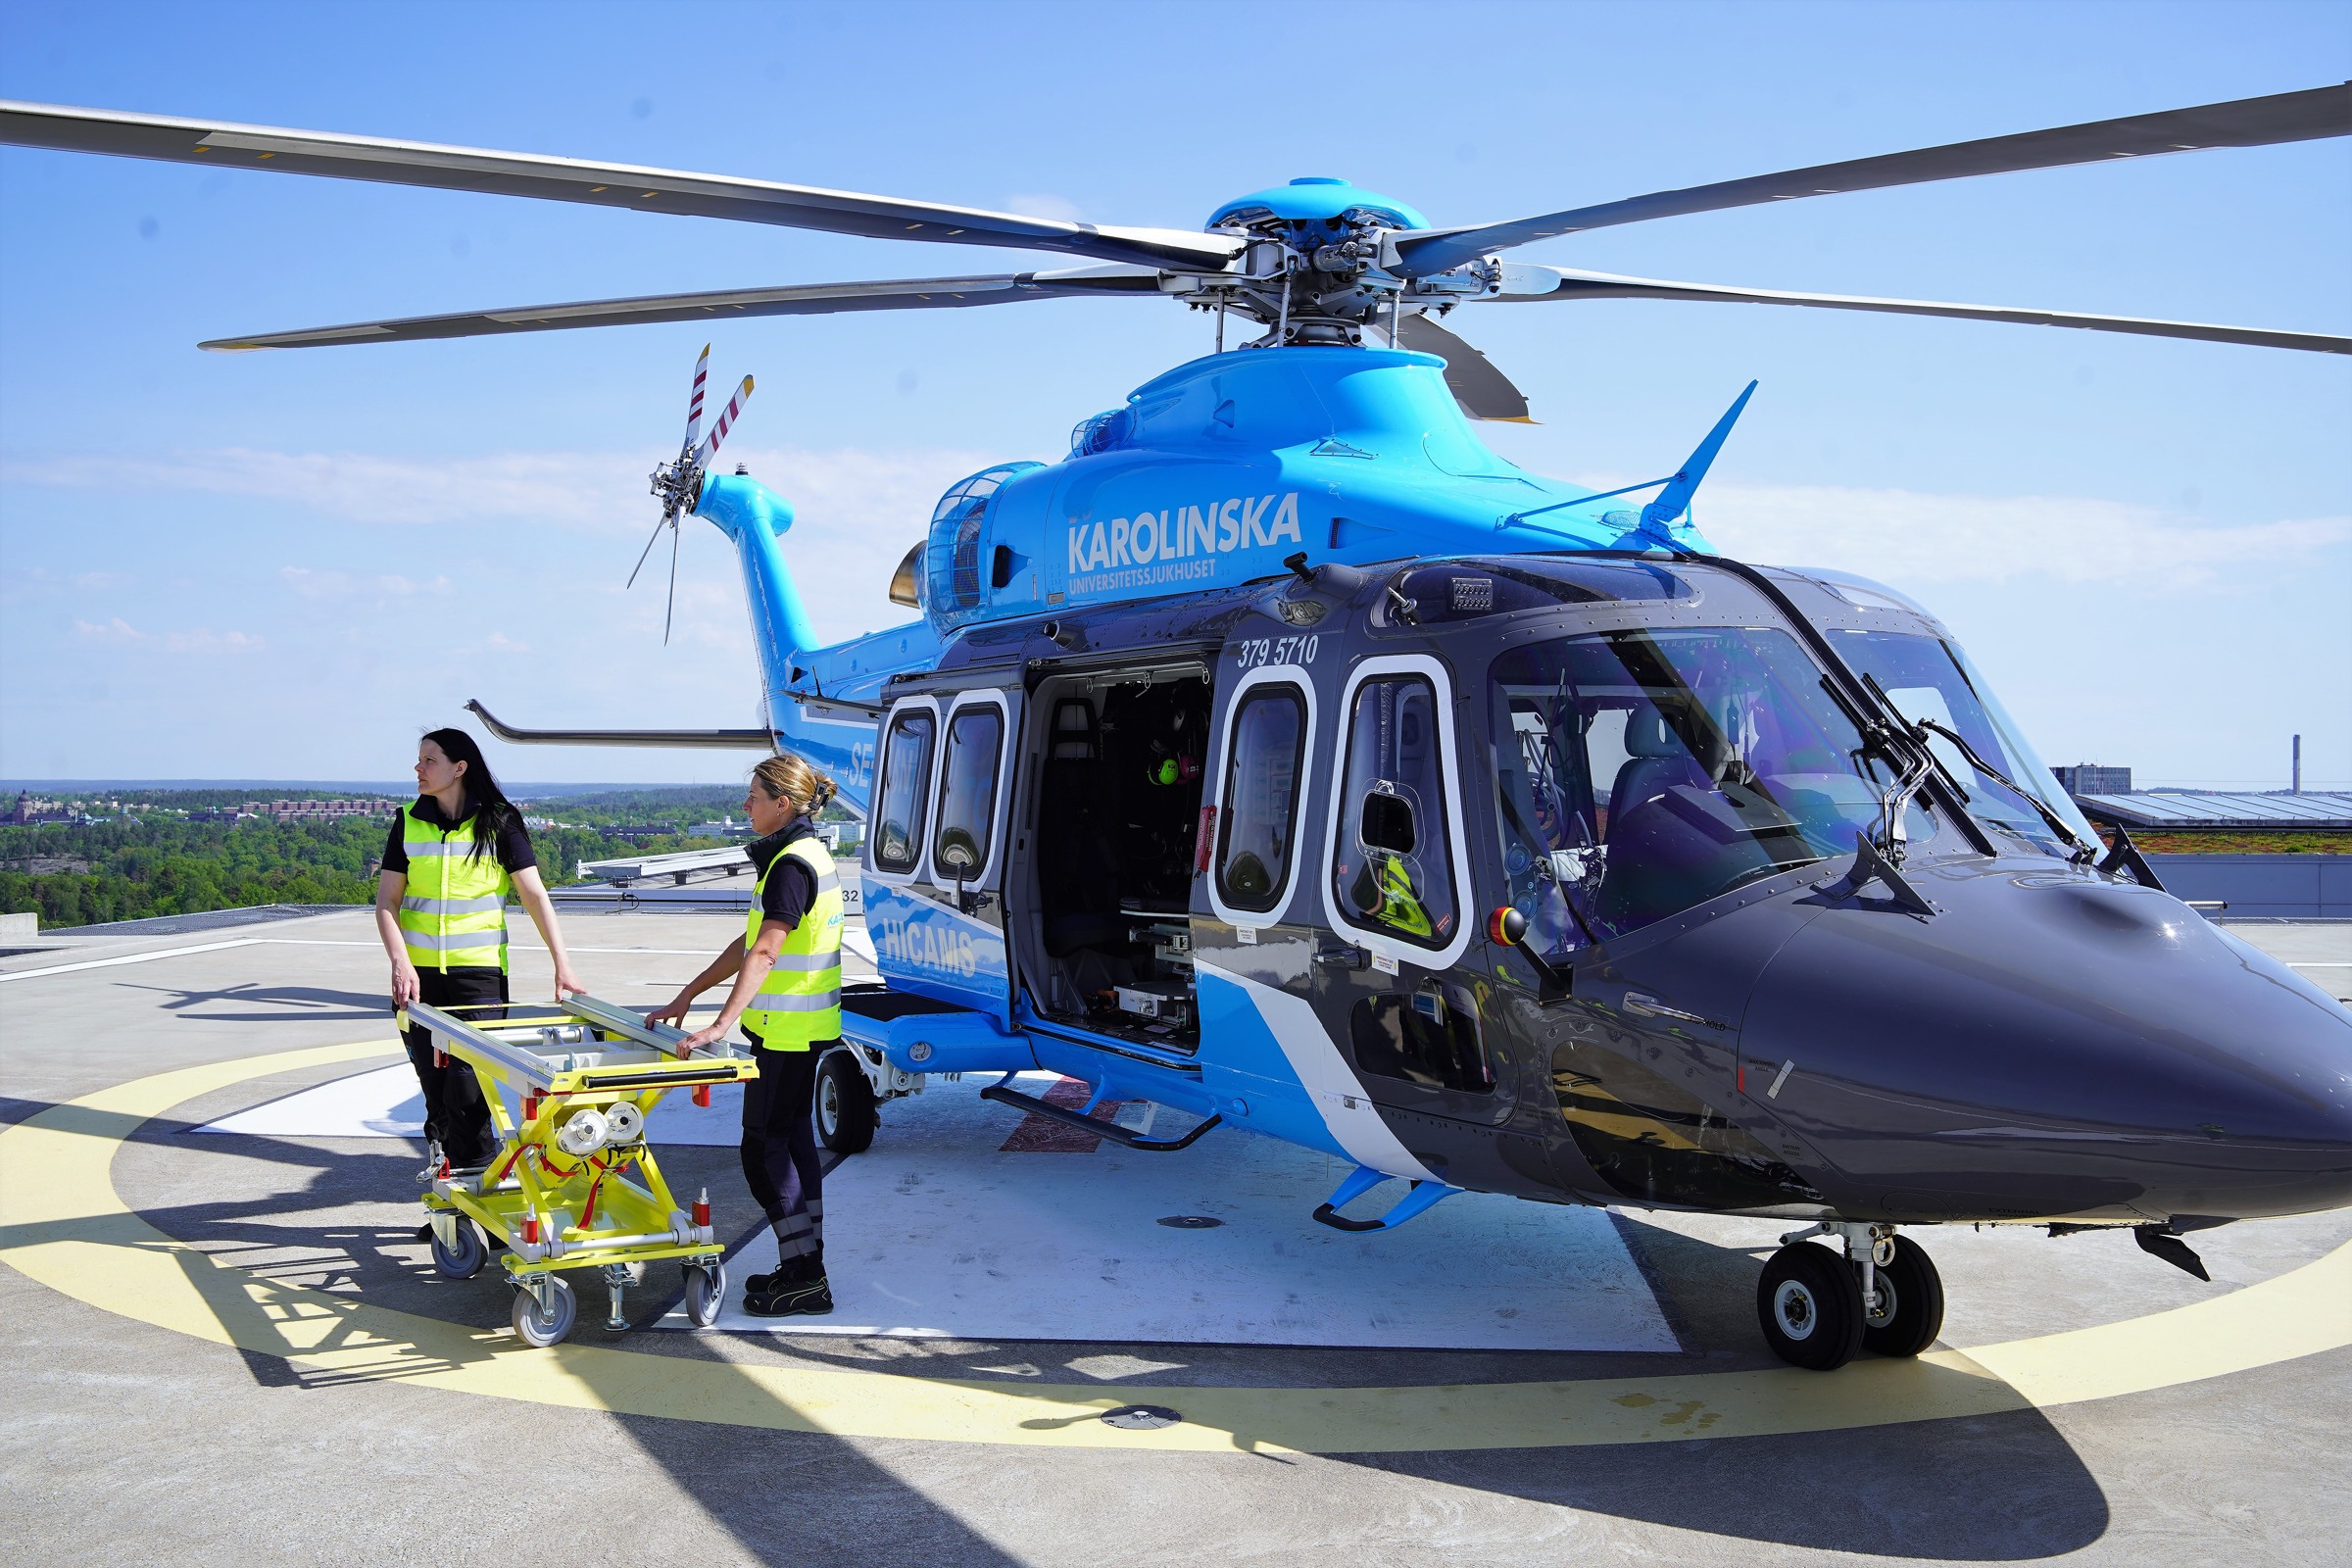 karolinska helikopter på helikopterplattan, två personer med patientbår står framför